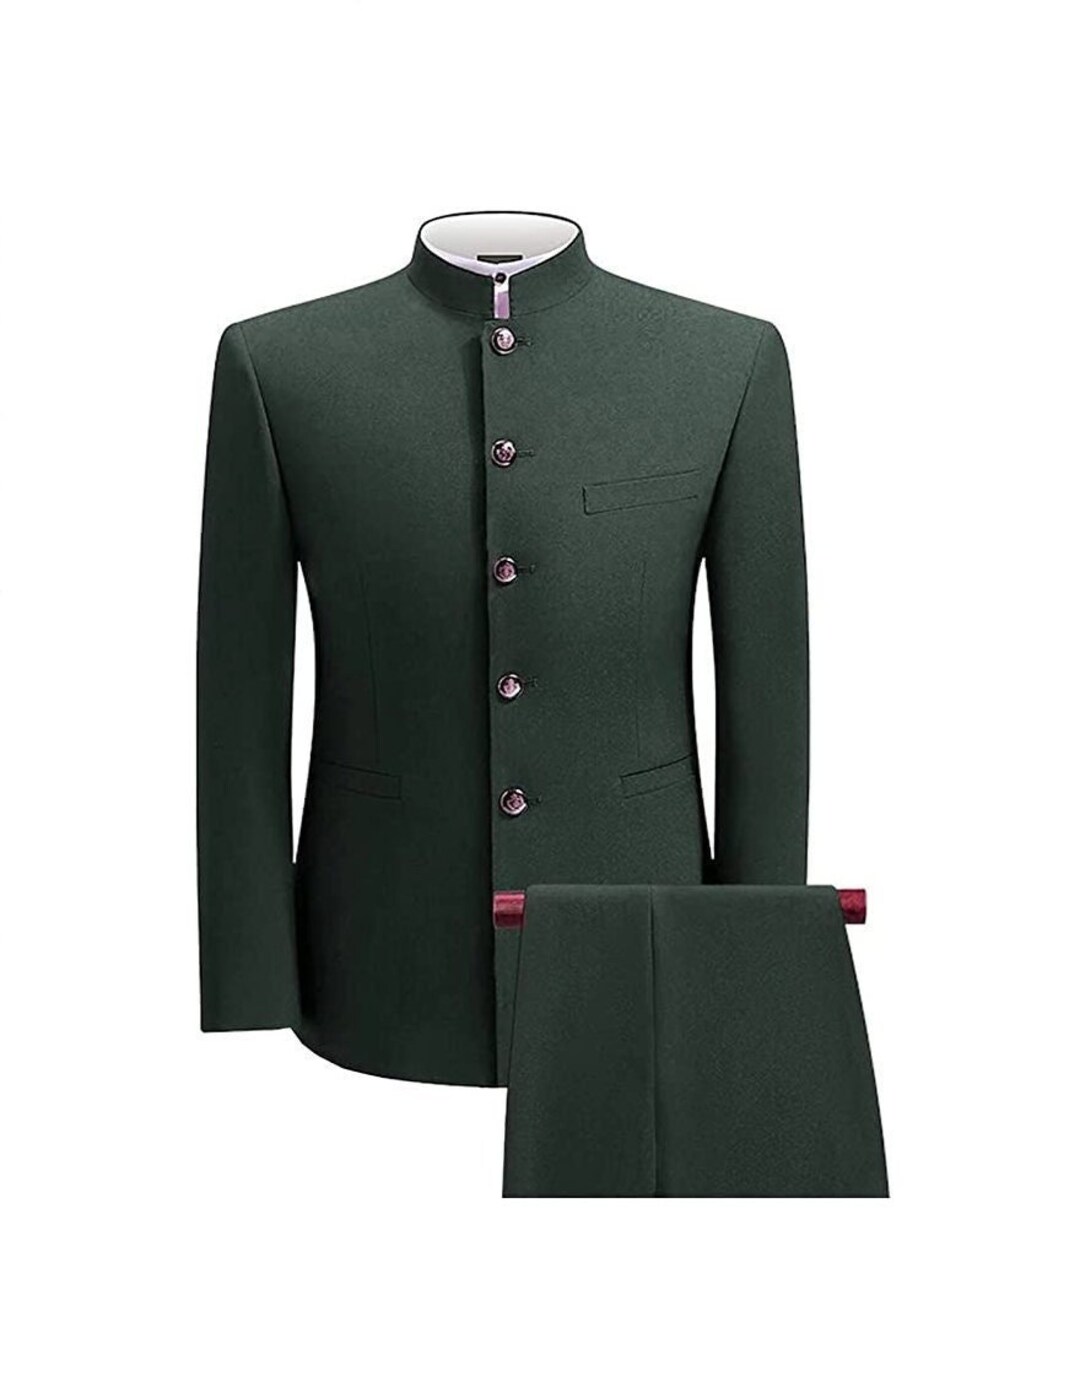 Dark Green Indian Ethnic Stylish Jodhpuri Suit for Men Mandarin Suit ...